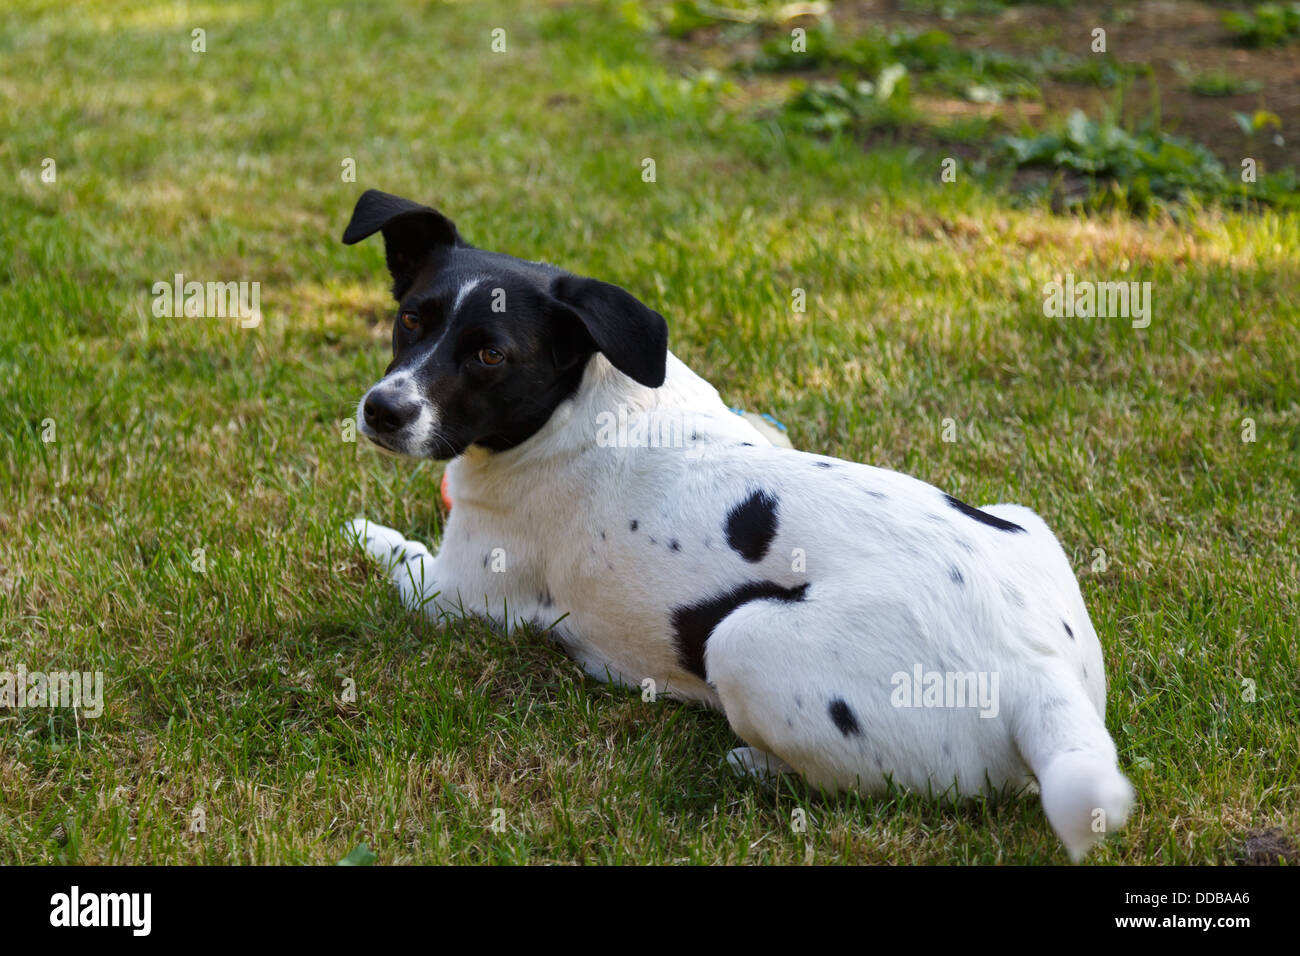 L'Emden, Allemagne, un chien se trouve dans un jardin sur la pelouse Banque D'Images